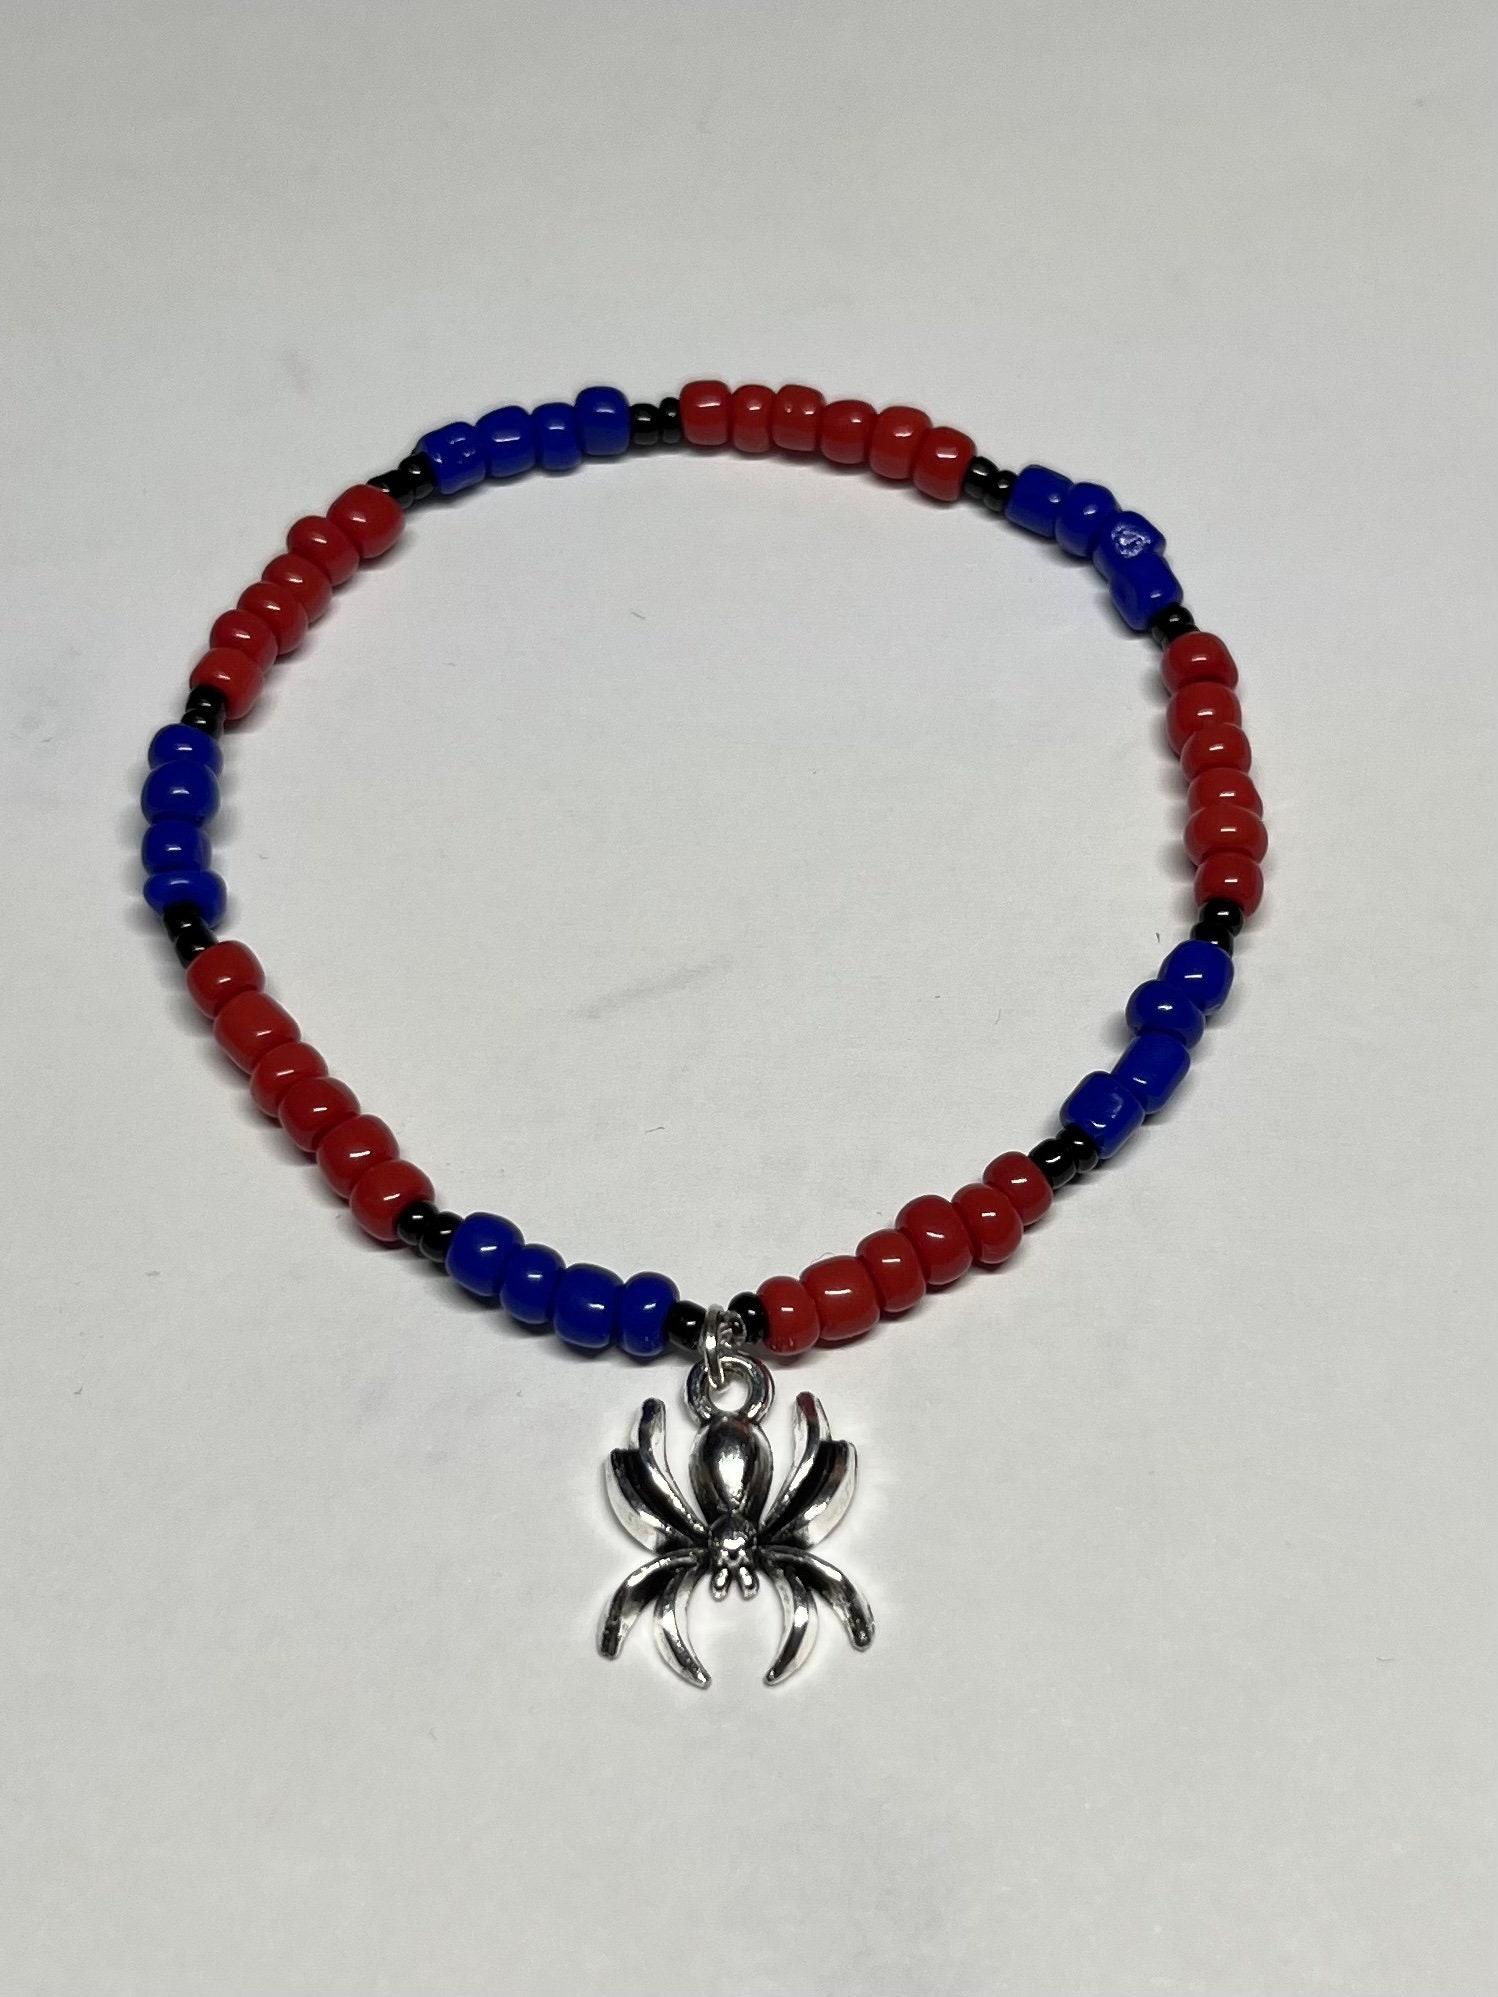 Spider man matching heart bracelets